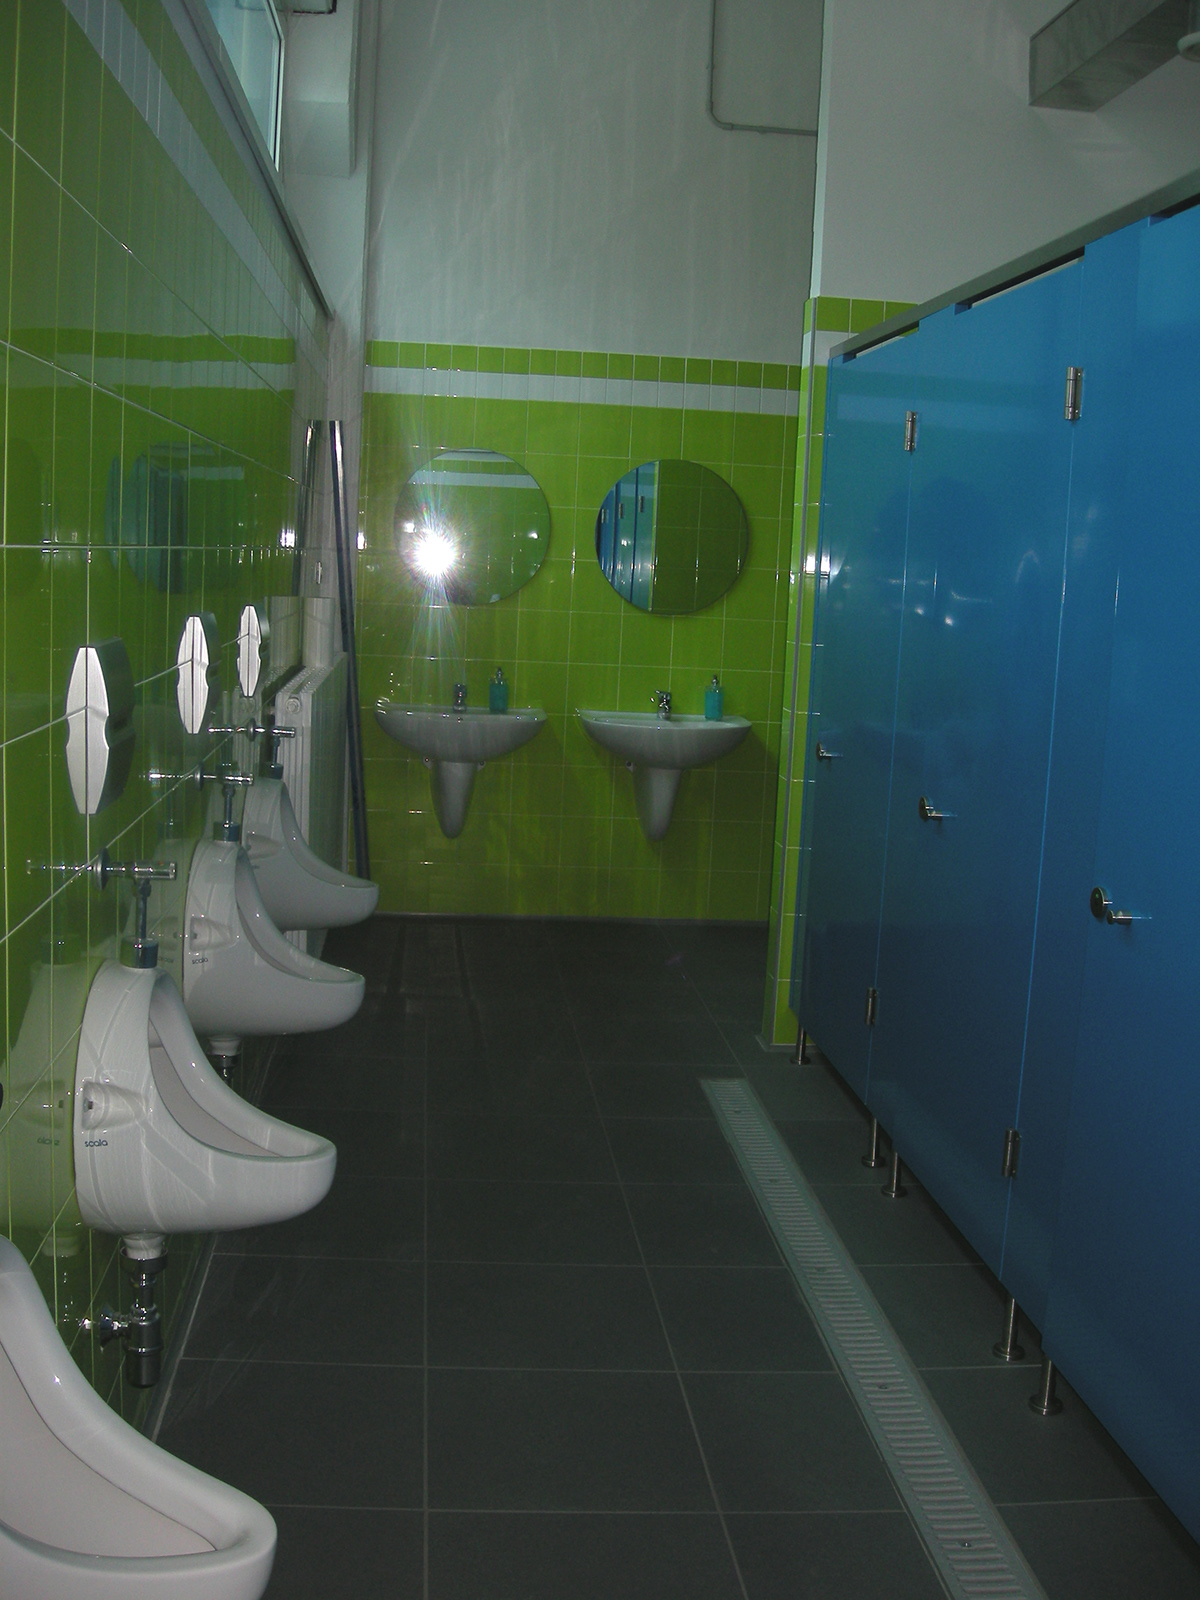 canteen restrooms locker room milan